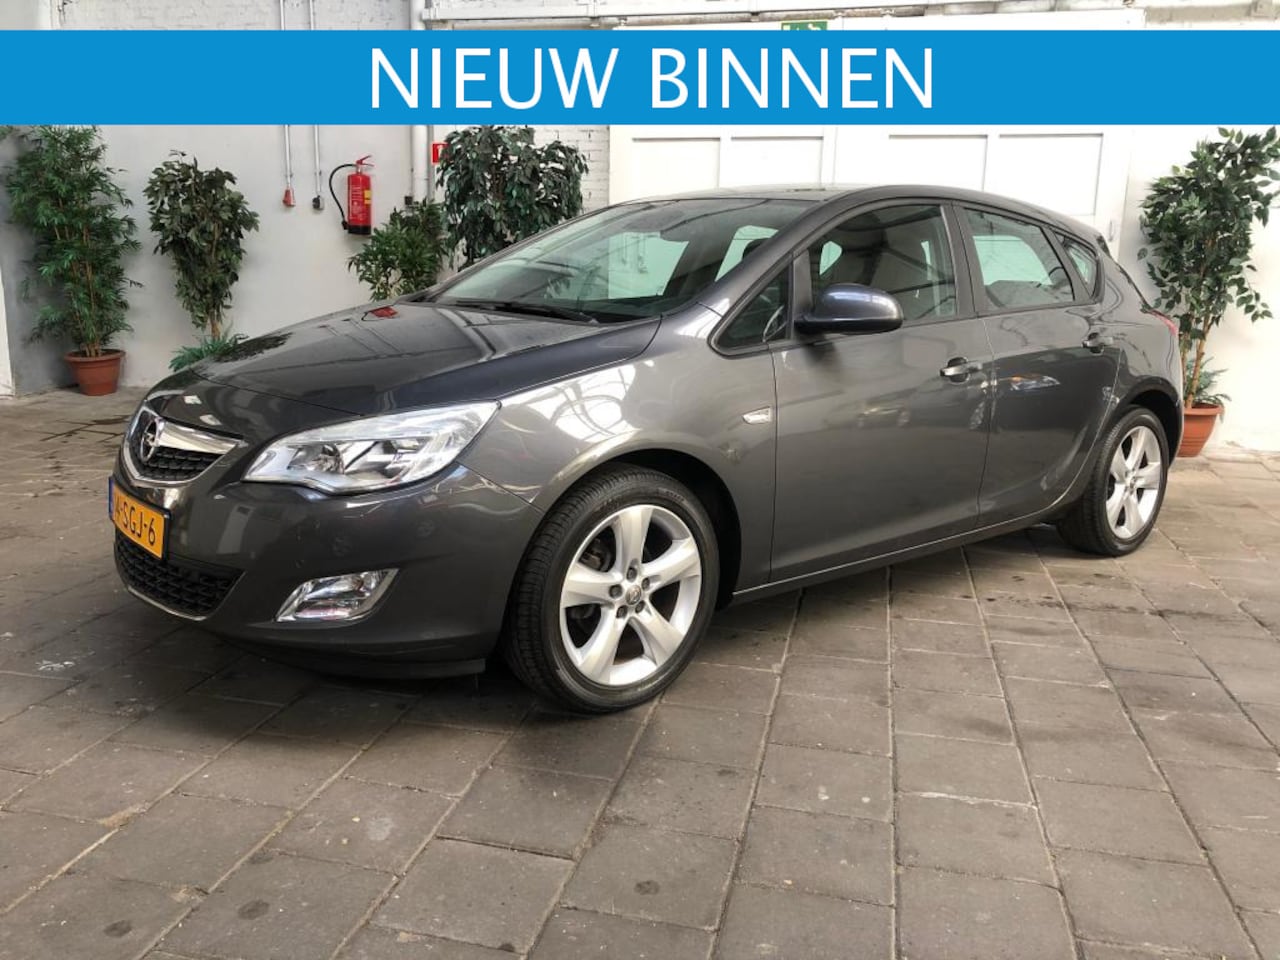 Opel 1.4 120PK *Navi*APK 2011 Benzine Occasion te koop op AutoWereld.nl